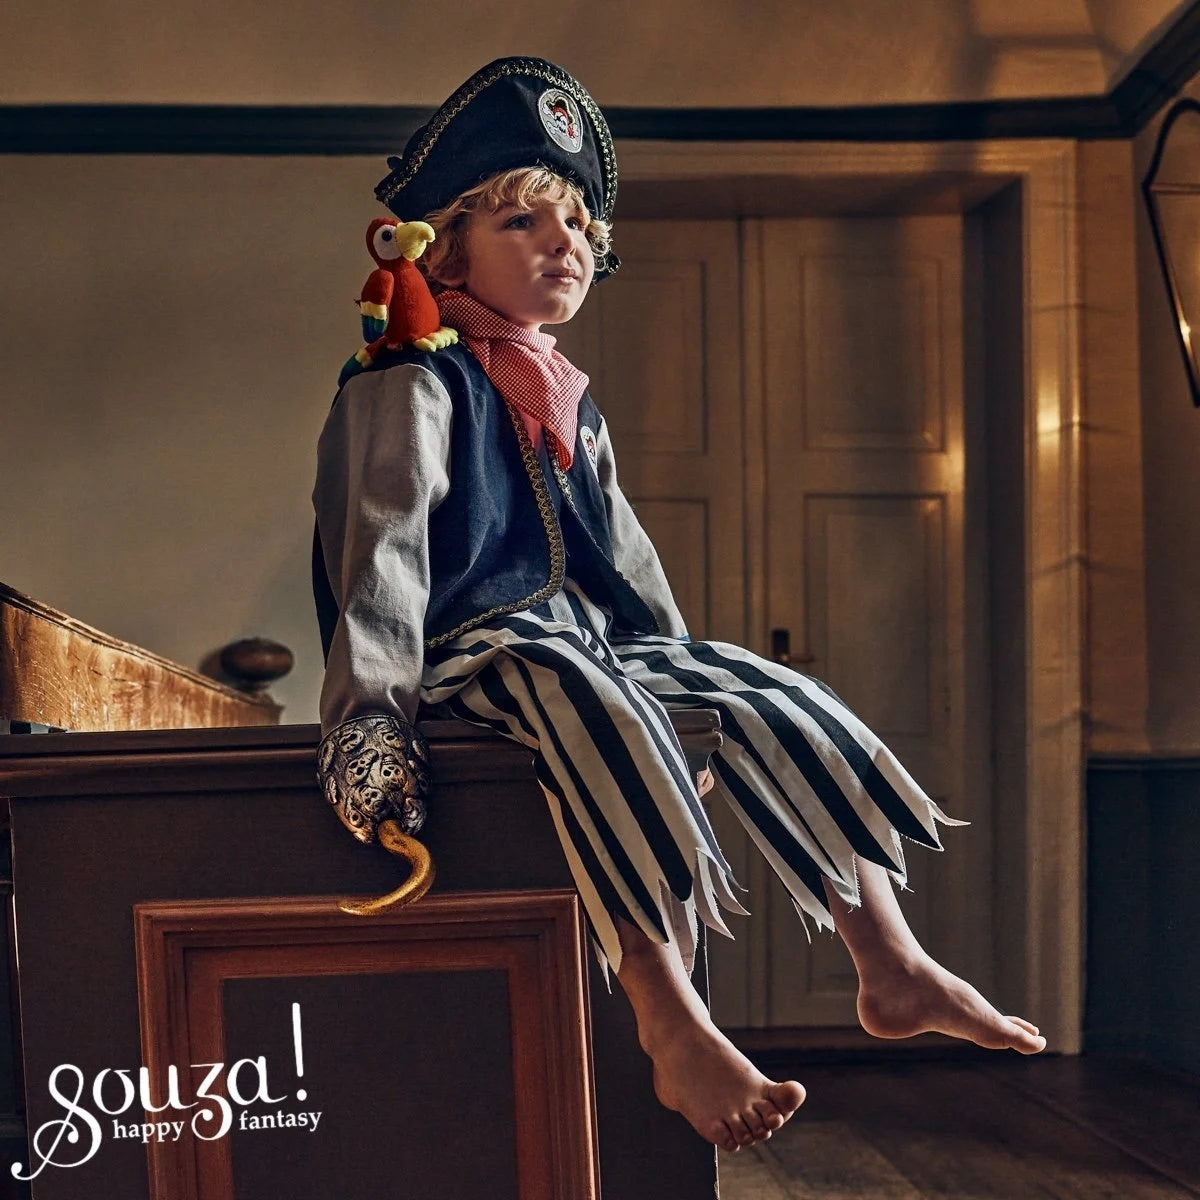 verkleedset piraat duncan - ensemble de déguisement pirate duncan